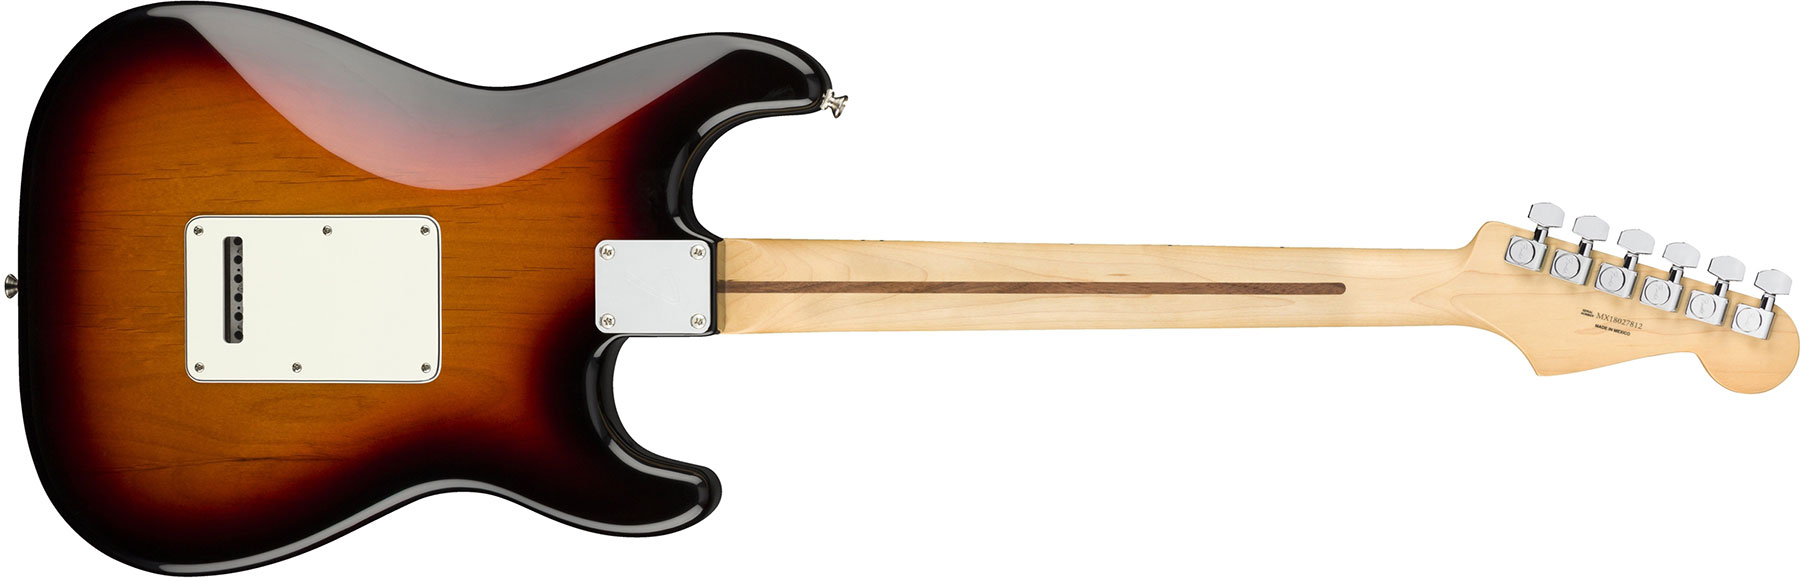 Fender Strat Player Lh Gaucher Mex Sss Mn - 3-color Sunburst - Left-handed electric guitar - Variation 4